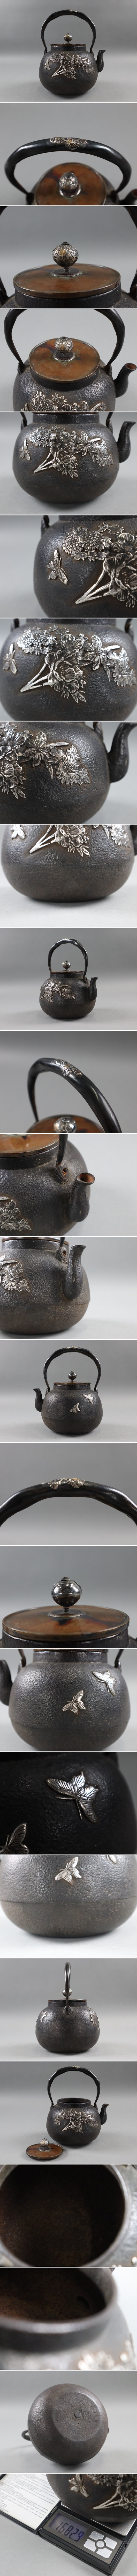 限定販売時代物 銀象嵌 鉄瓶 銀摘 銅蓋 1682,9g 湯沸 茶道具 急須 湯沸 古美術品[a407] 鉄瓶